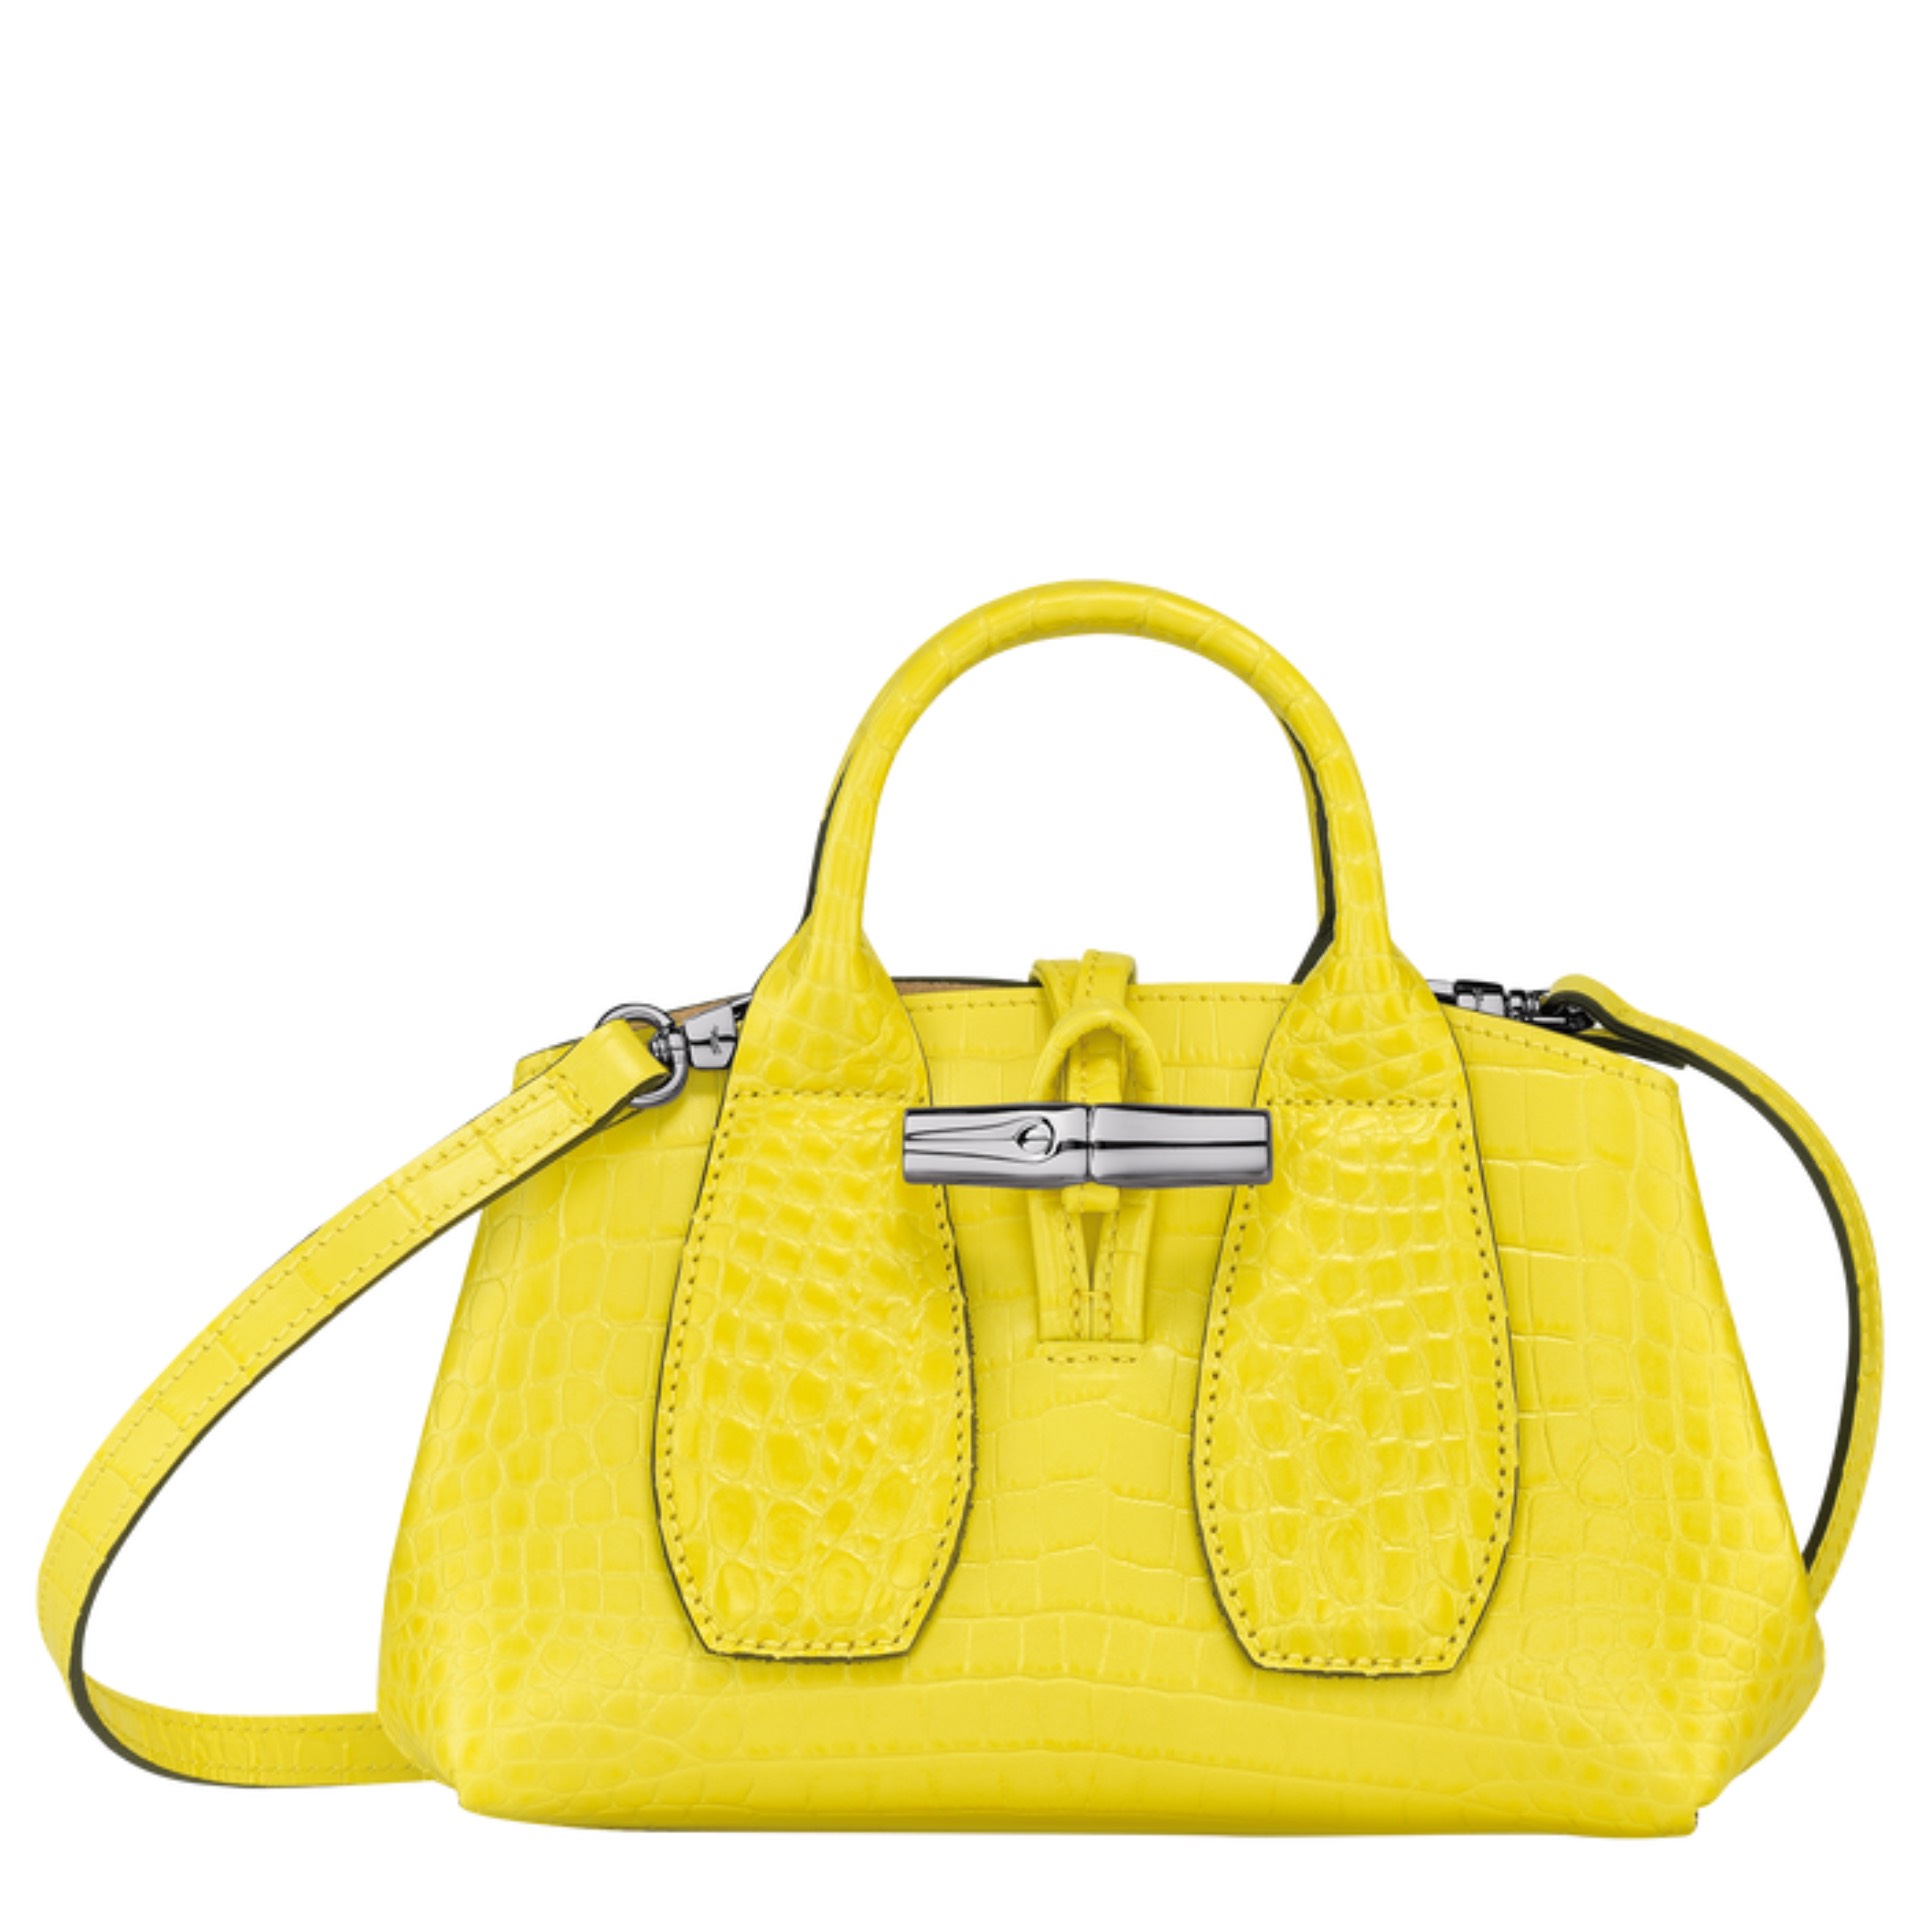 bolso amarillo limón Longchamp